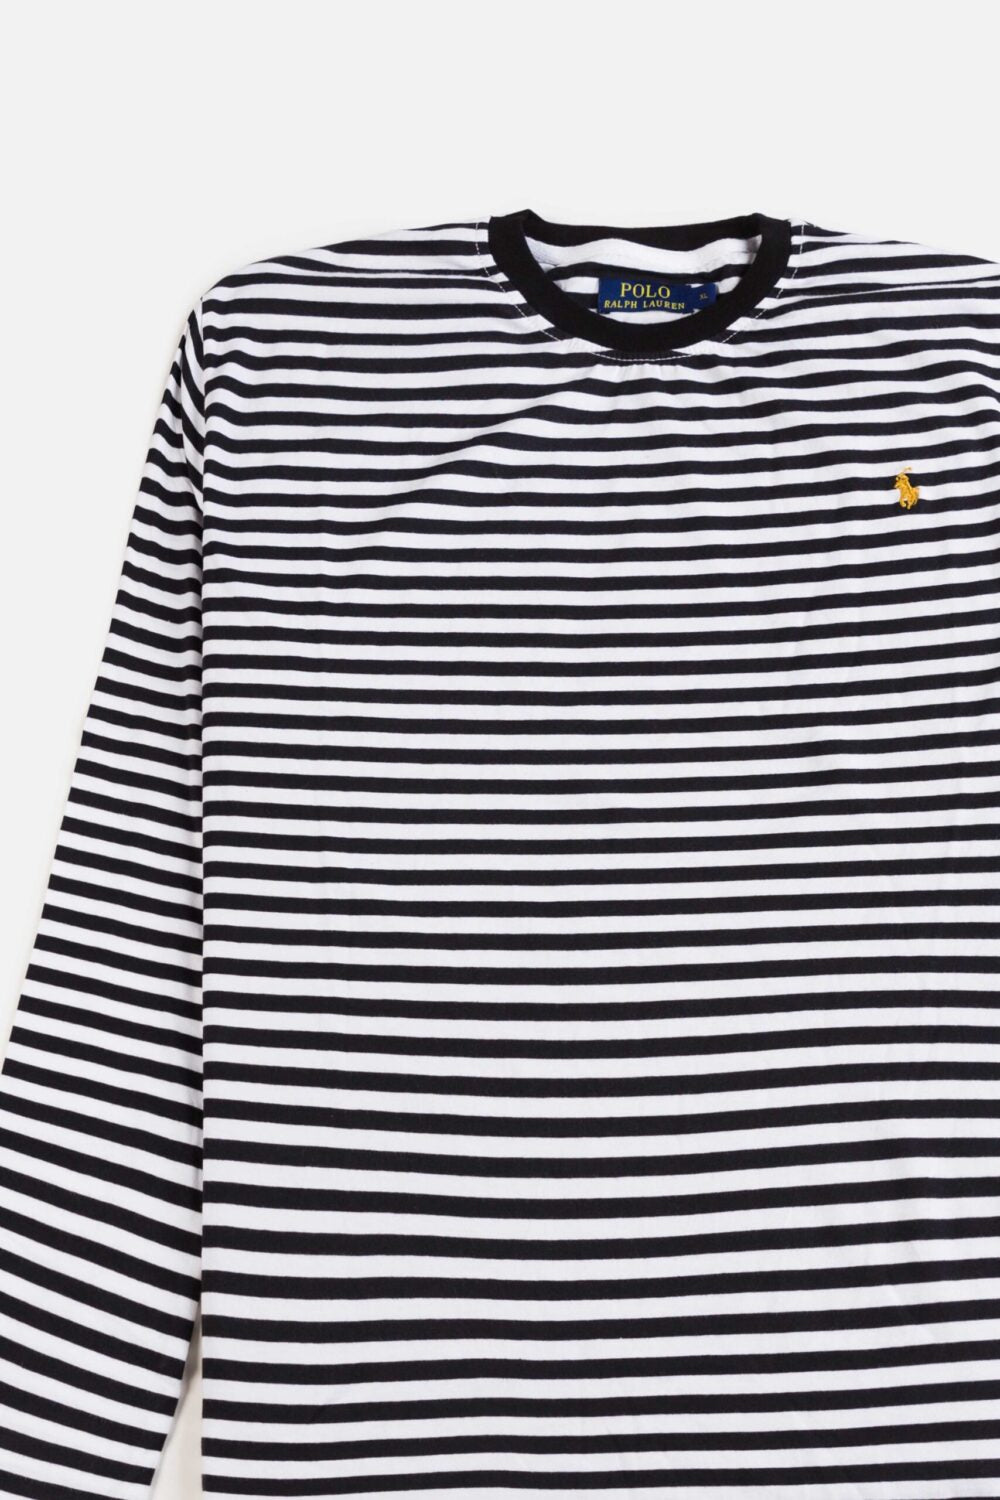 RL Premium Winter Full T Shirt – Black Stripes